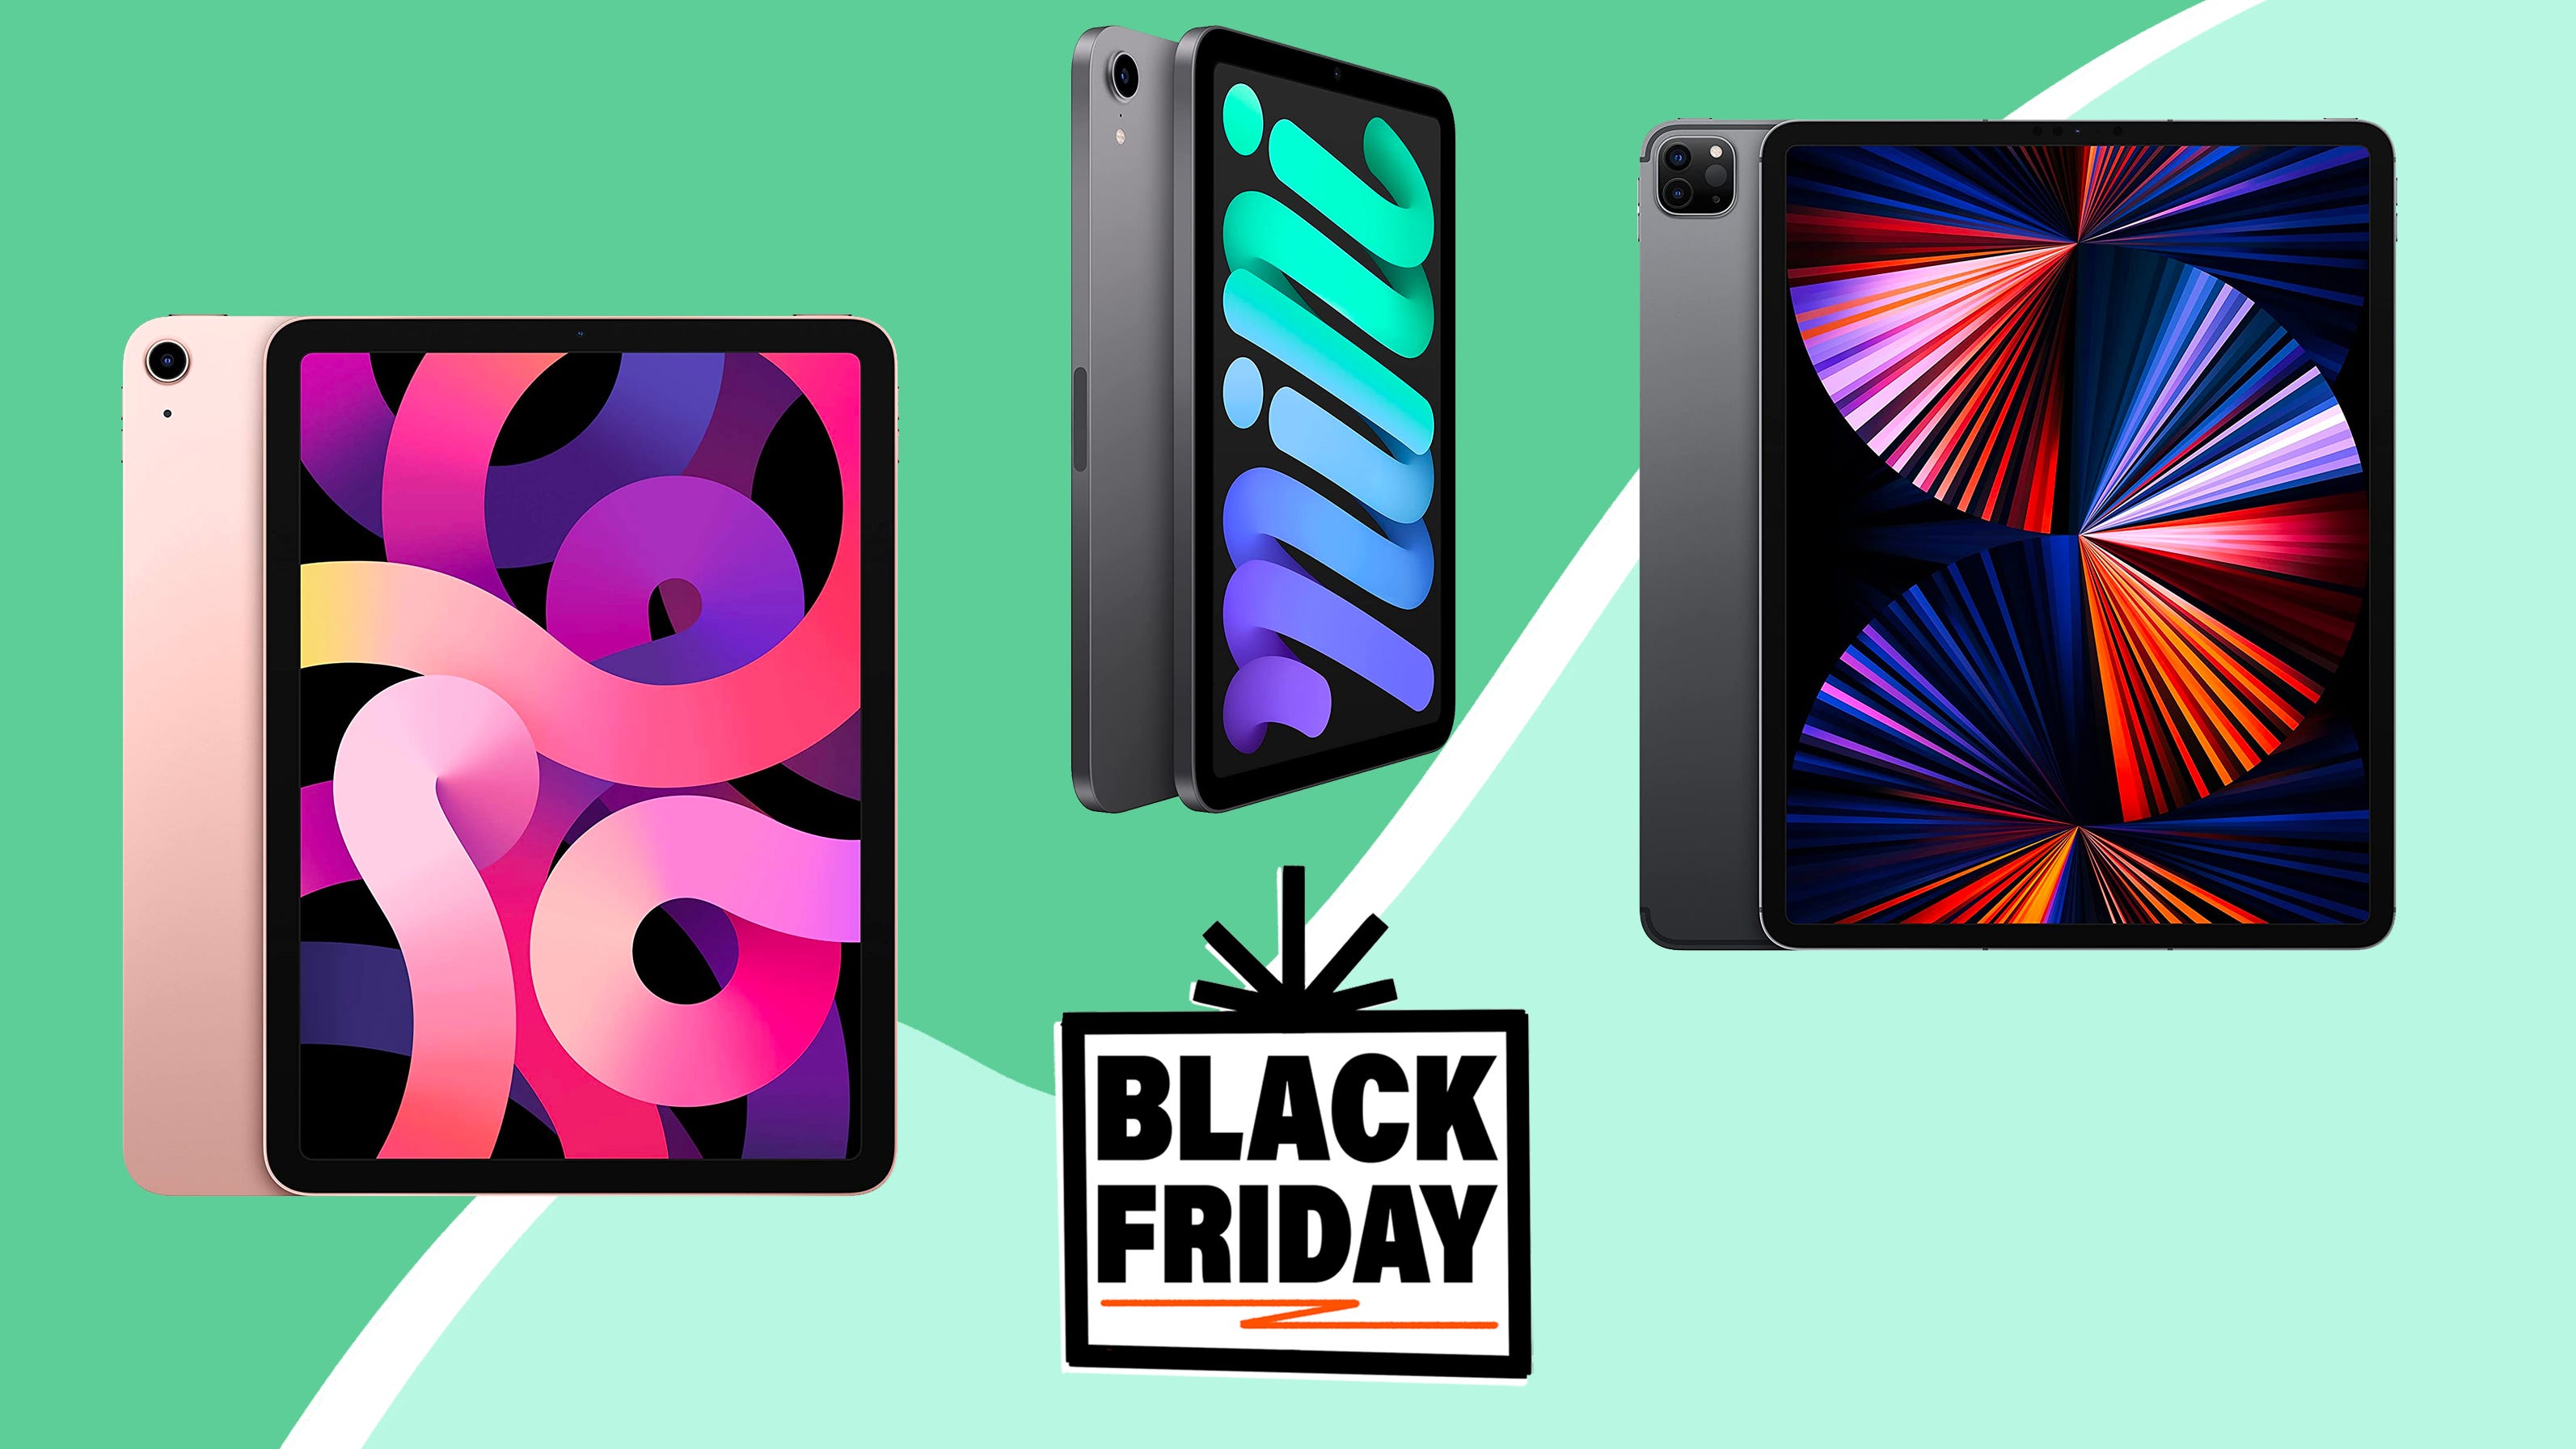 Black Friday 2021 iPad Black Friday and iPad Pro Black Friday deals